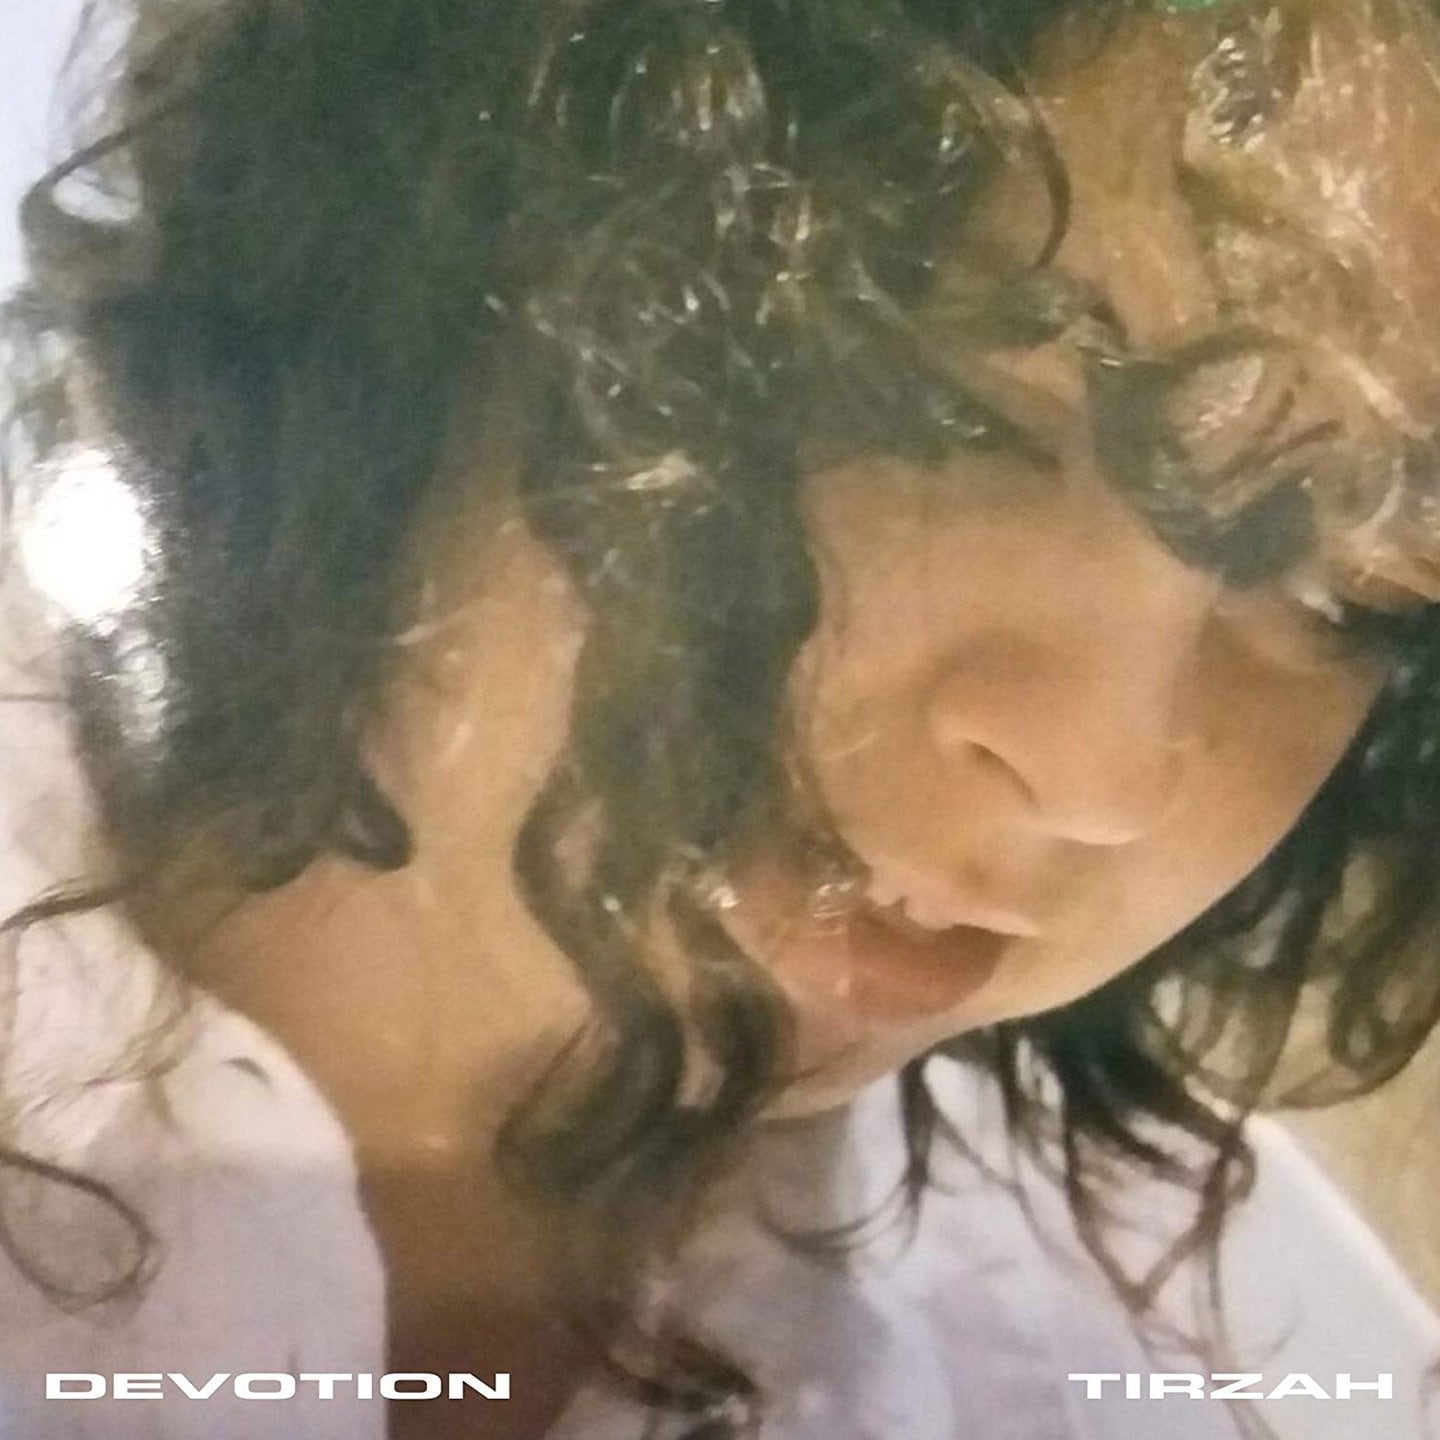 2. Tirzah - 'Devotion'